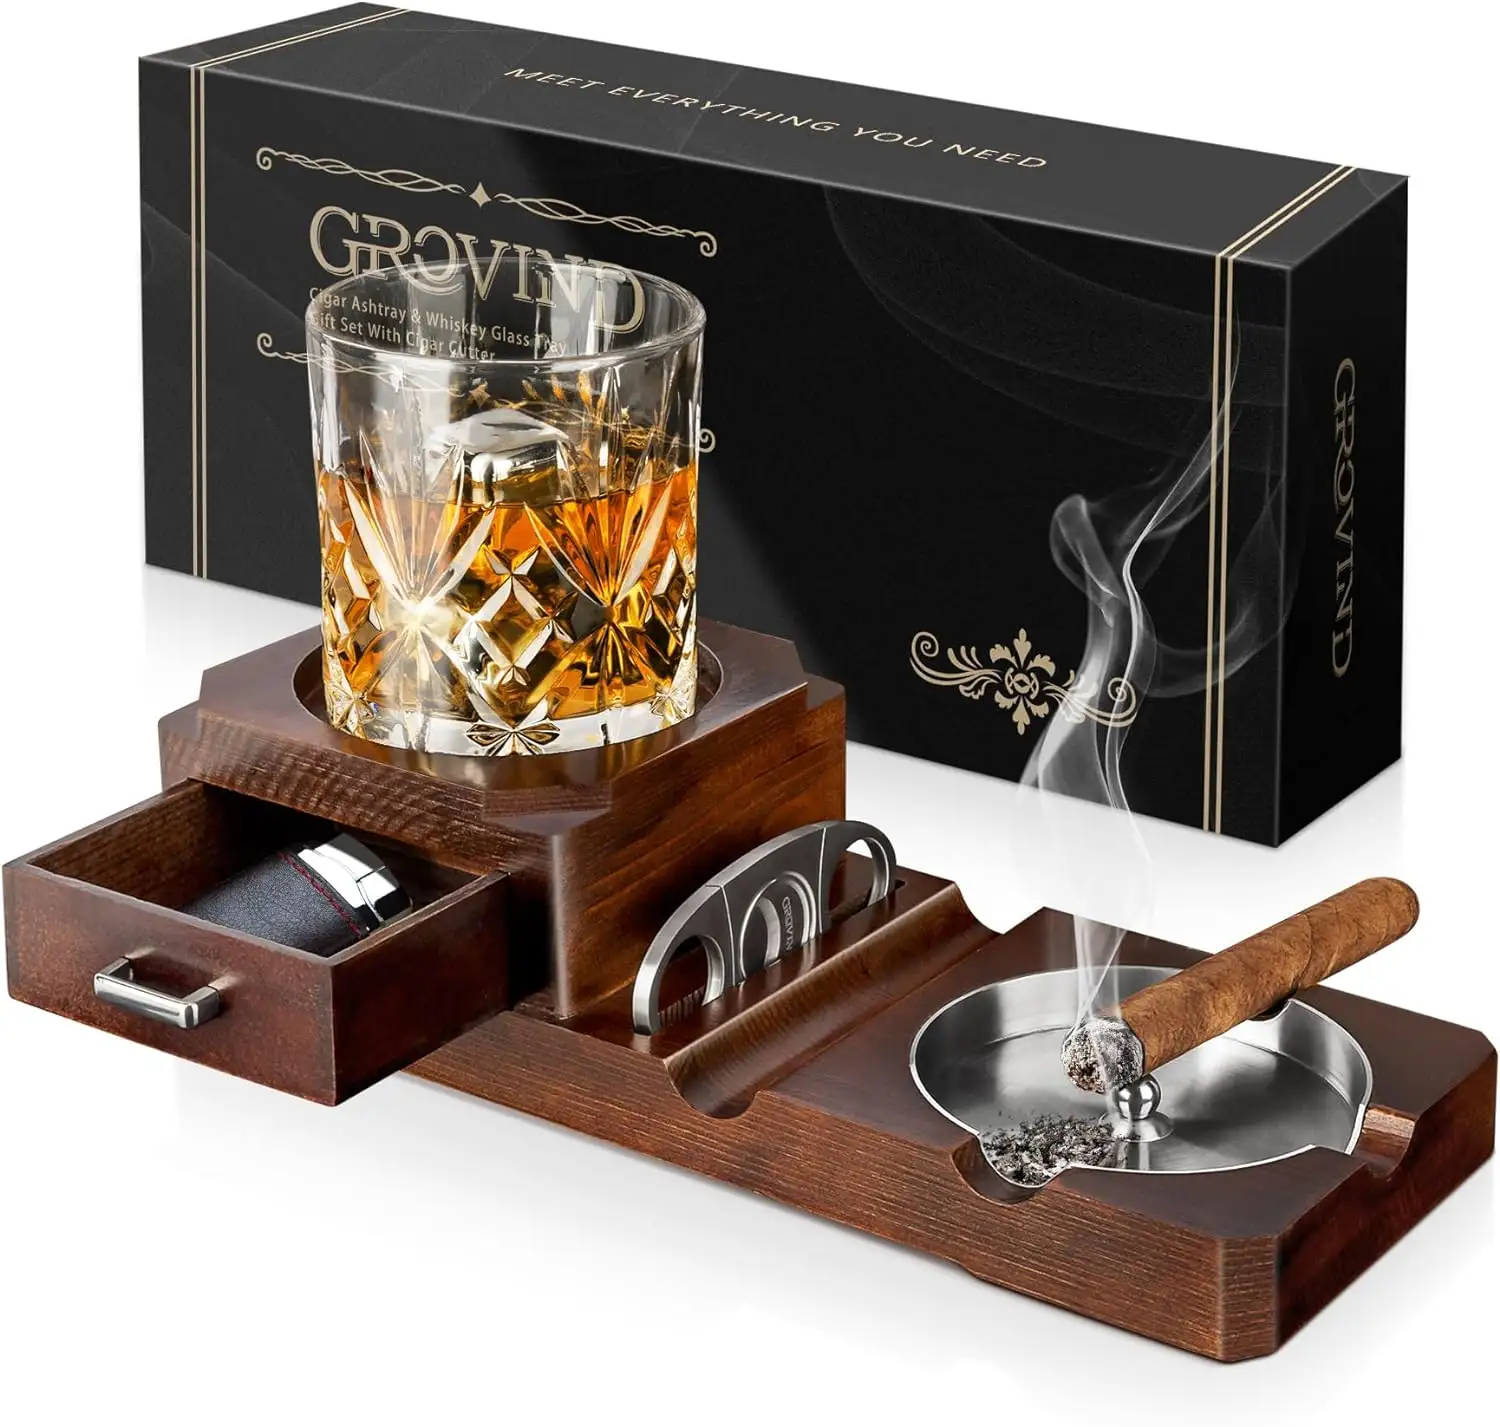 Zigarren-Aschenbecher-Geschenkset mit Zigarren schneider und Whisky-Glass chale und Aschenbecher aus Holz im Freien